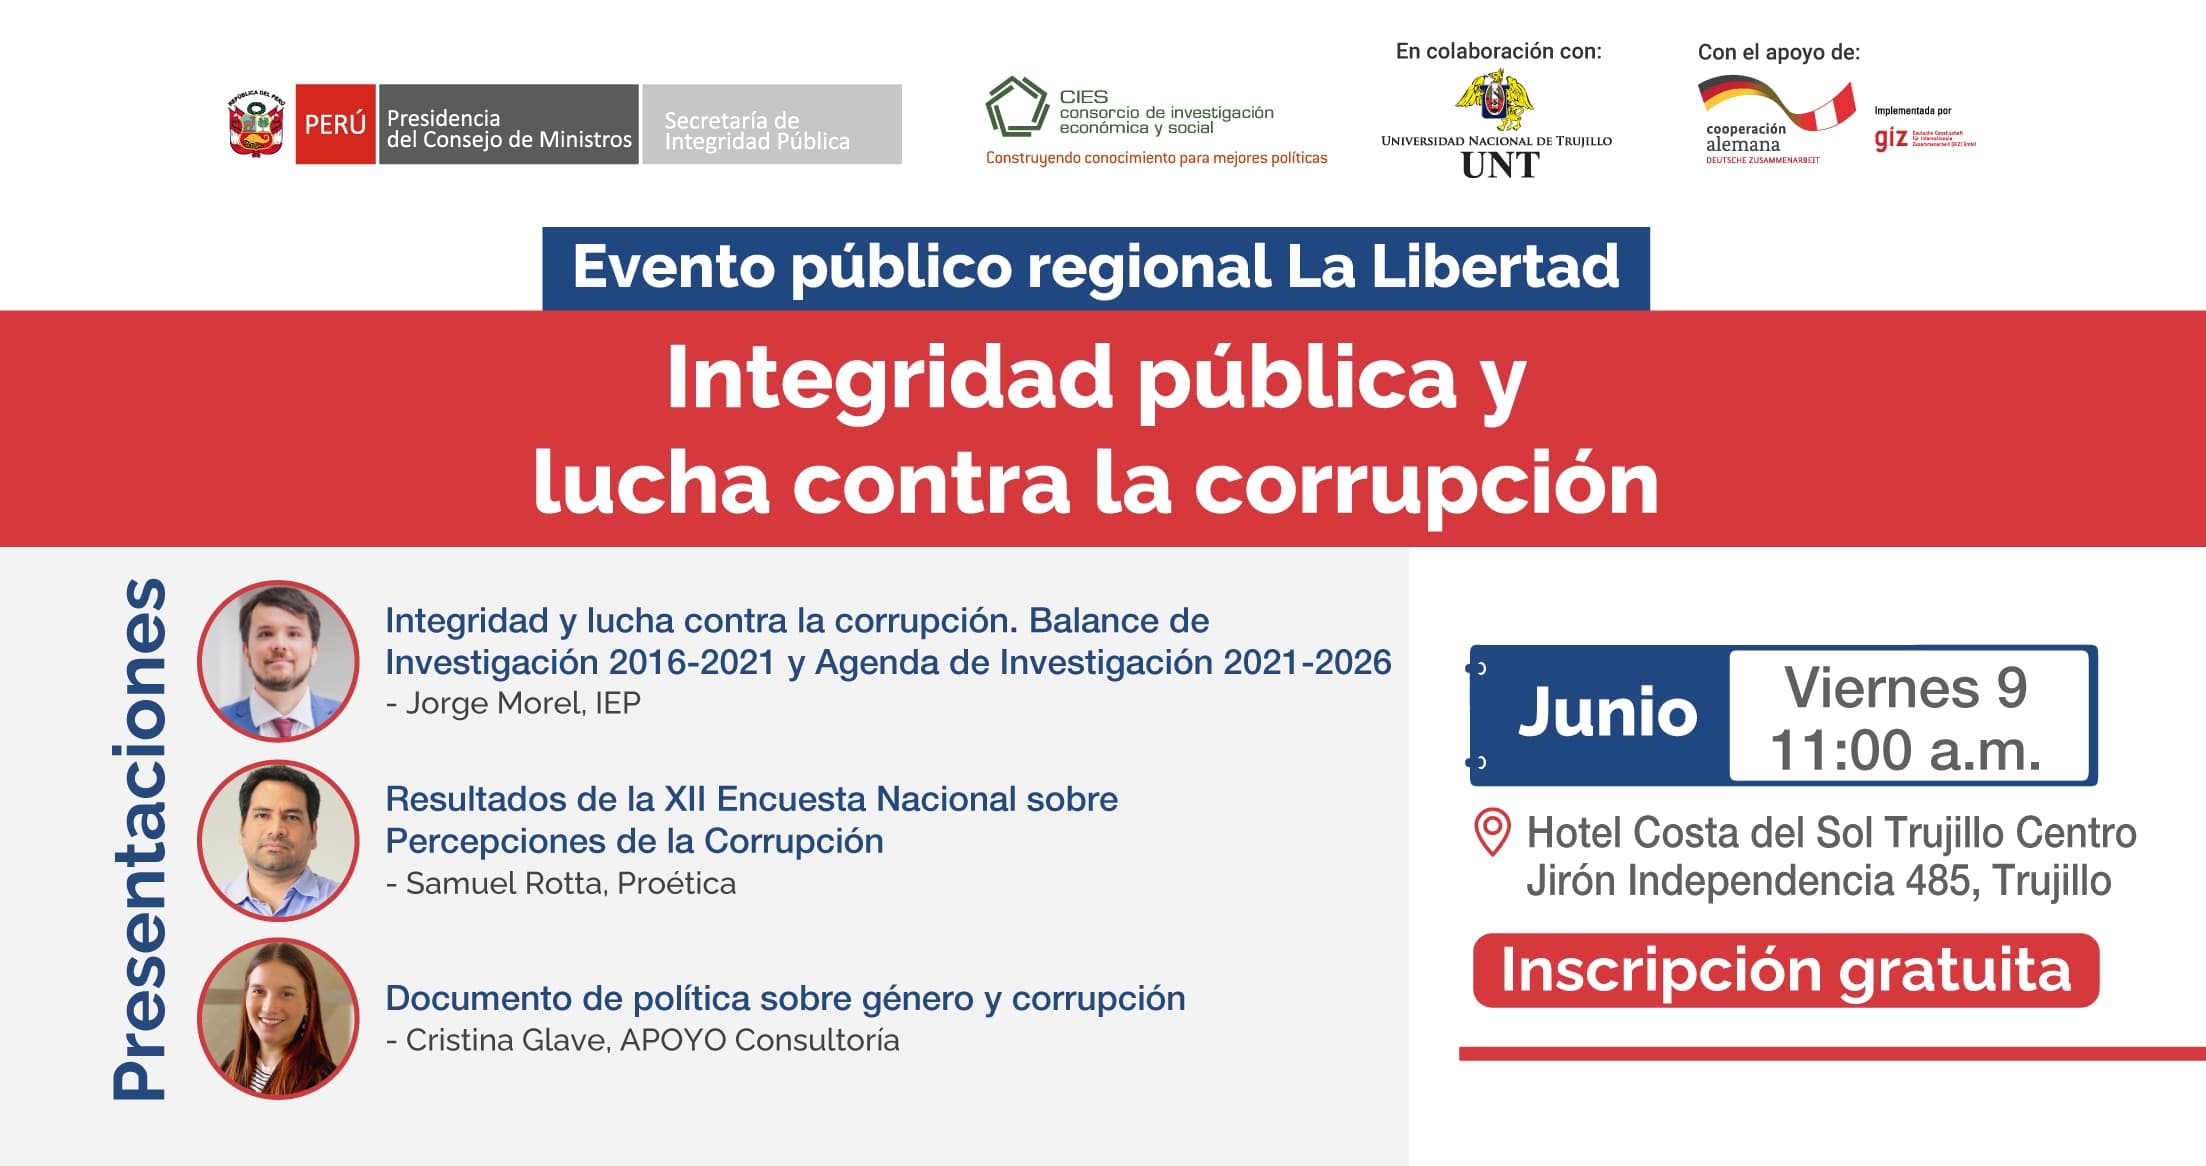 La Libertad Evento público regional “Integridad pública y lucha contra la corrupción”